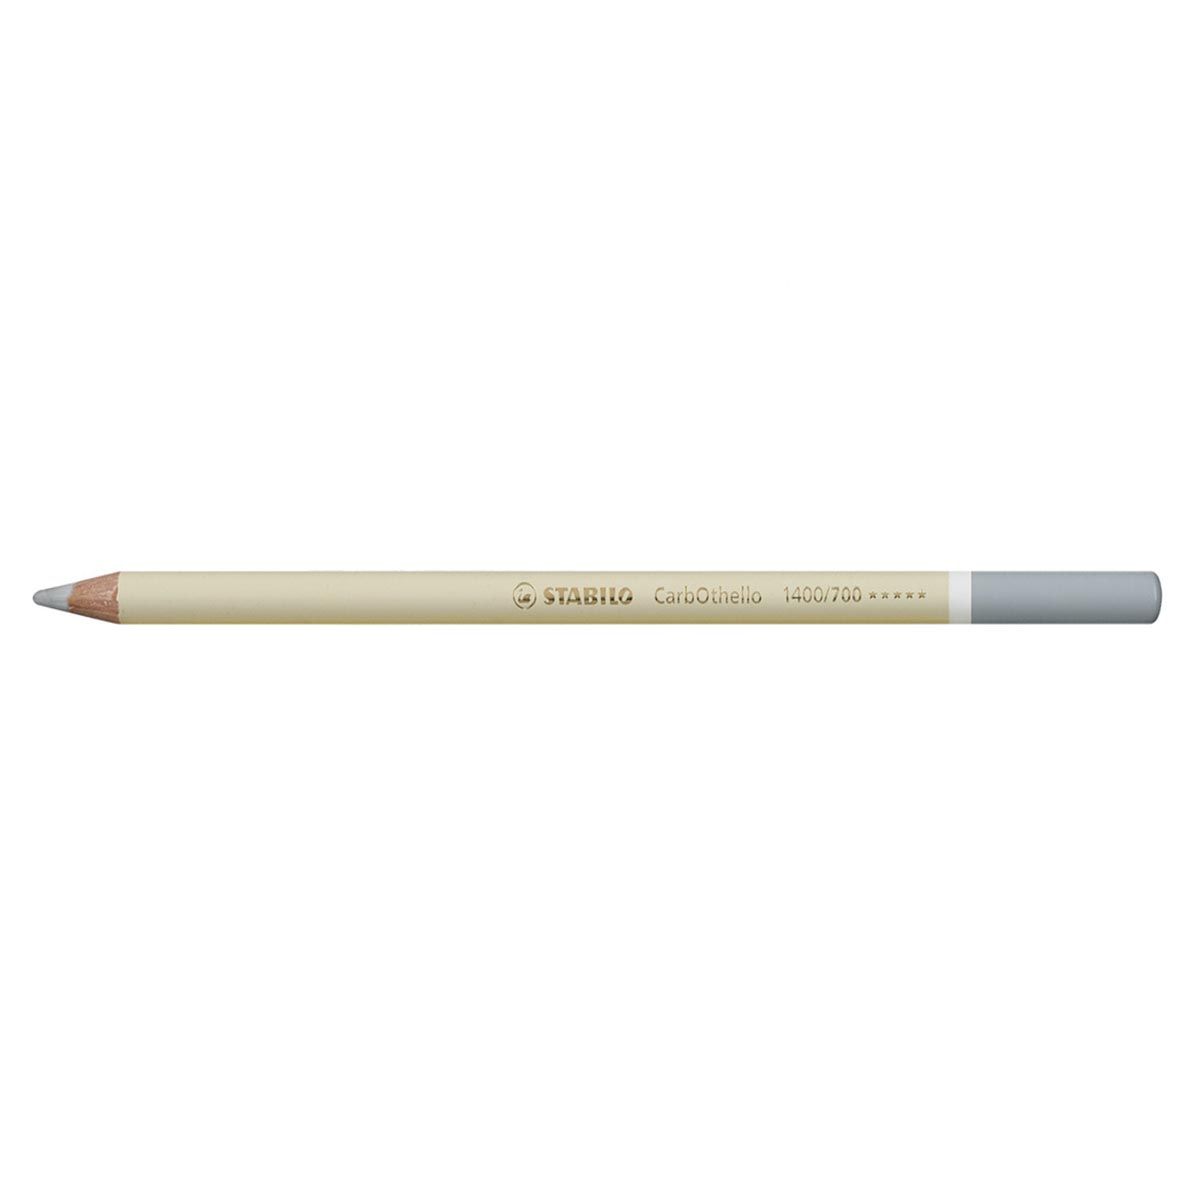 Stabilo Carbothello Pastel Pencil Warm Gray 1-700